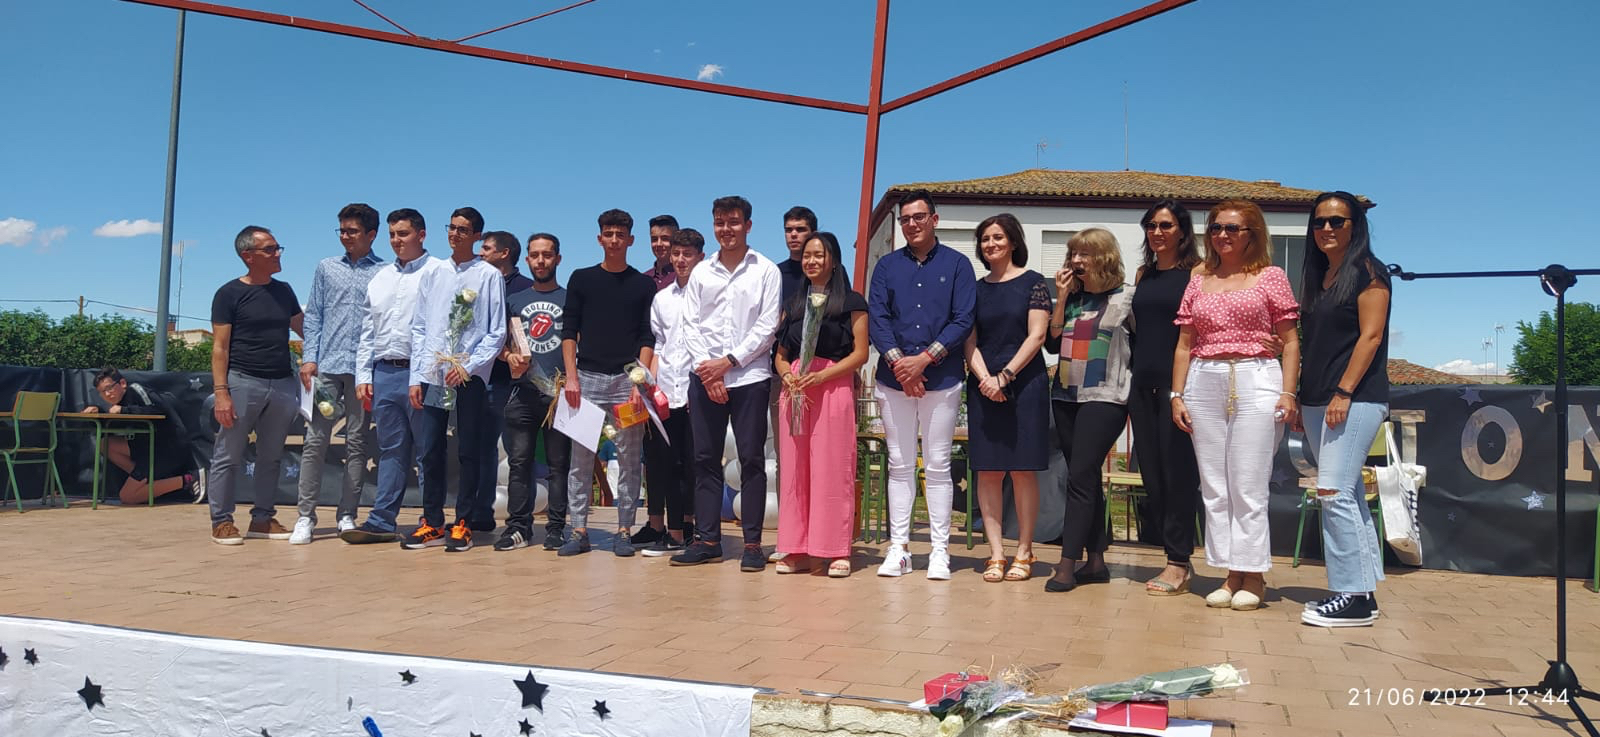 El parque municipal de Macotera acogía la graduación de los alumnos del CEO Miguel Delibes 